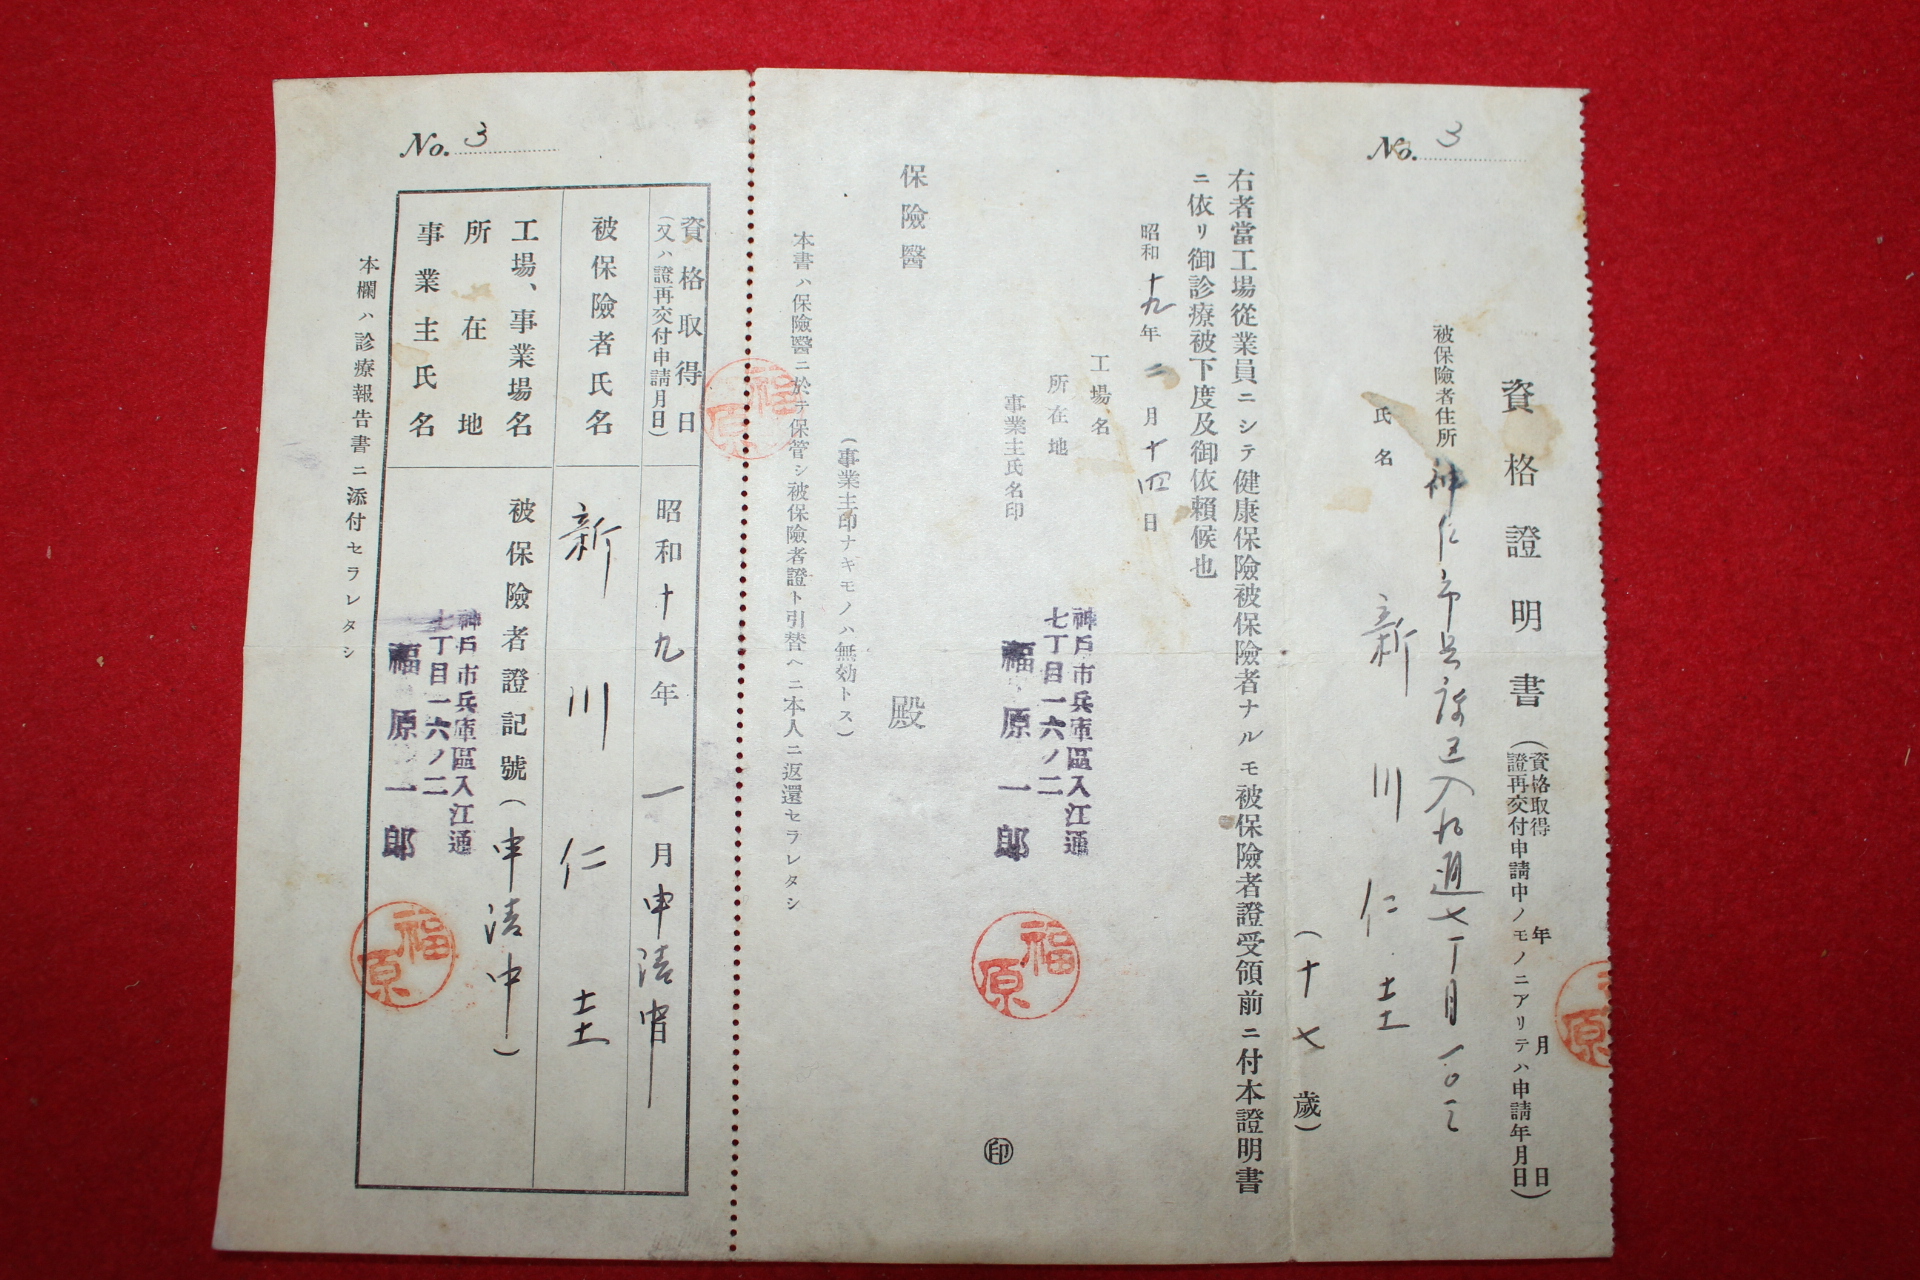 1944년 일본유학생 자격증명서